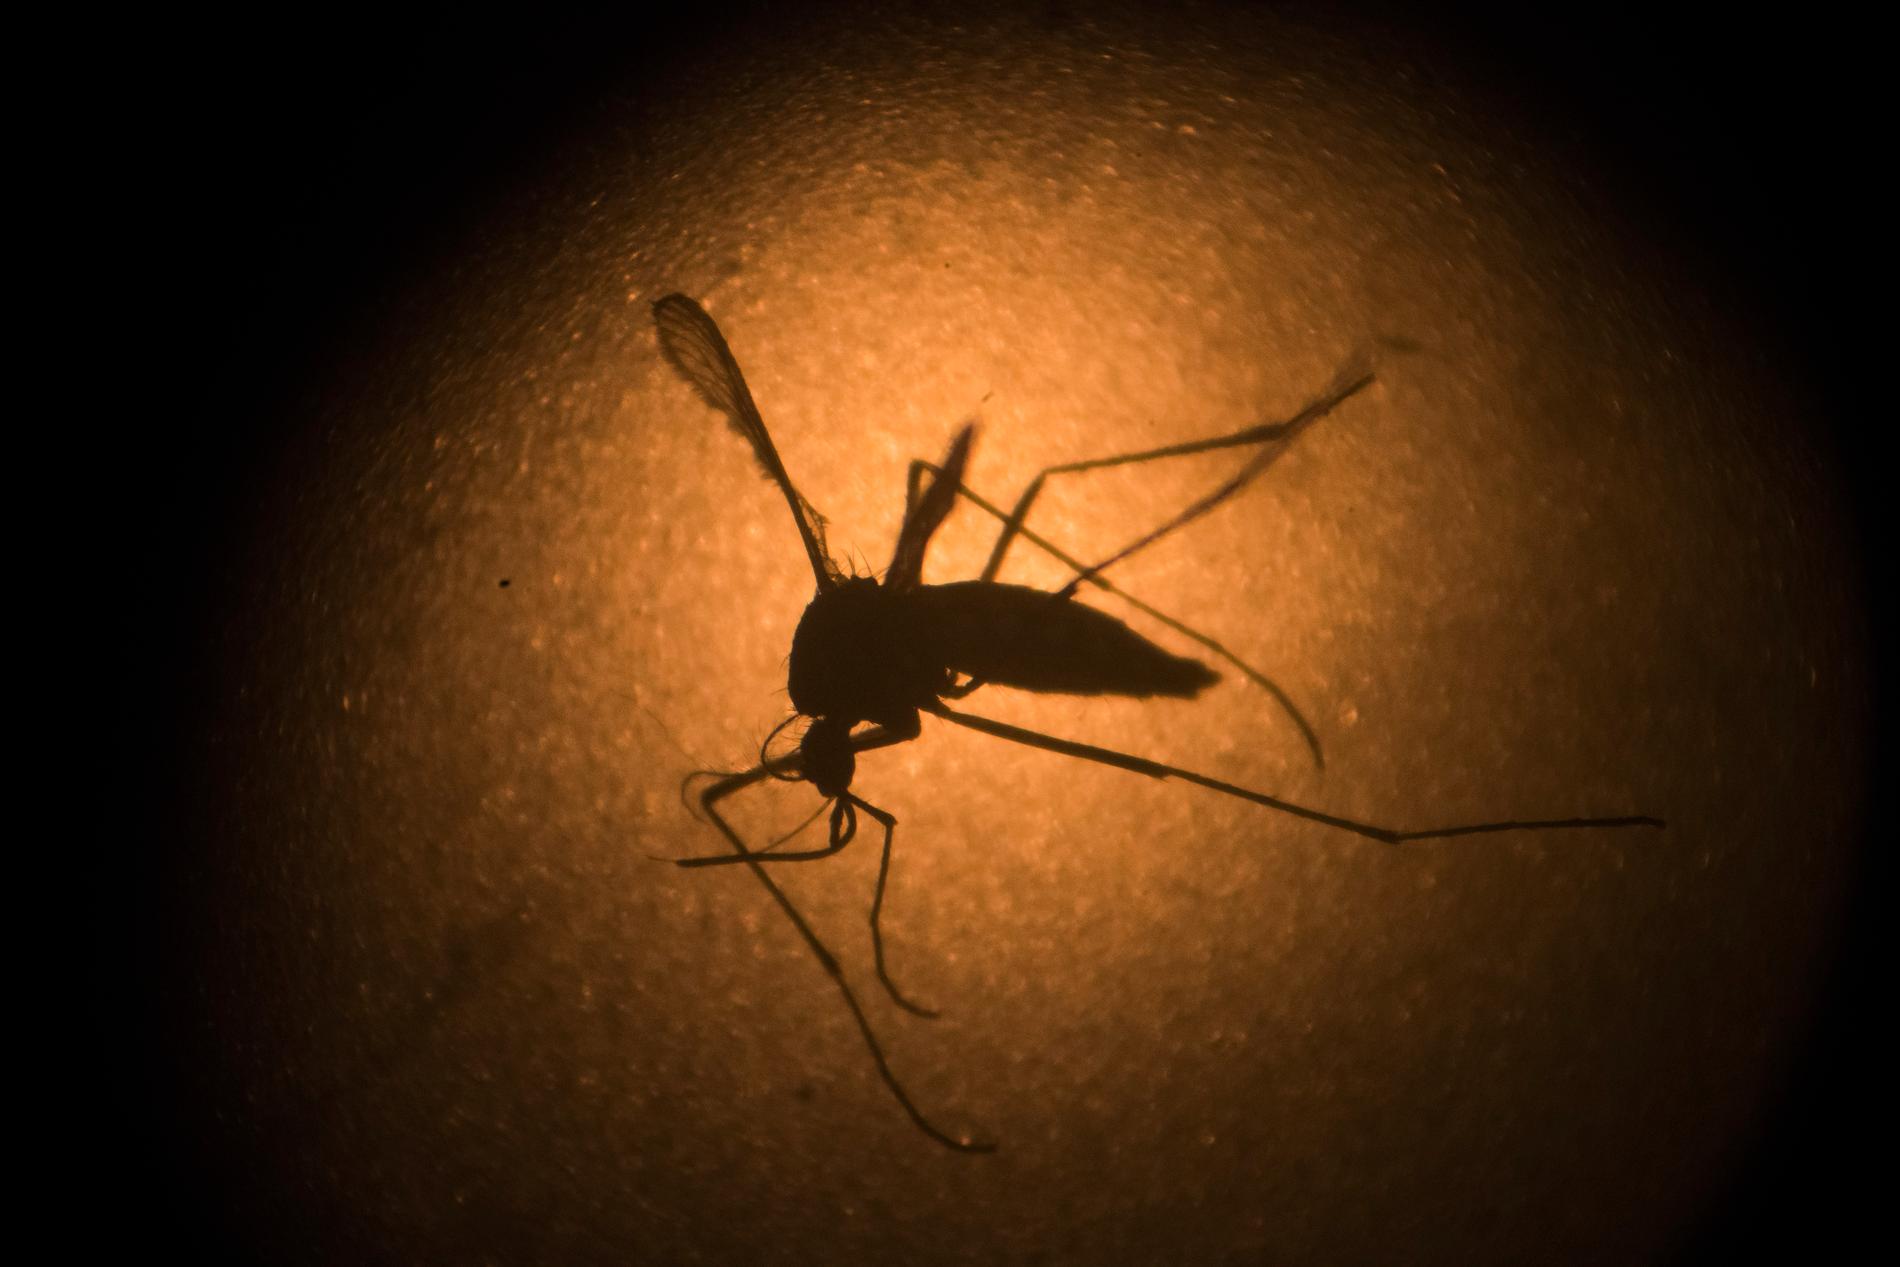 Malariaparasiten sprids av myggor. År 2017 smittades 219 miljoner människor världen över av malaria.